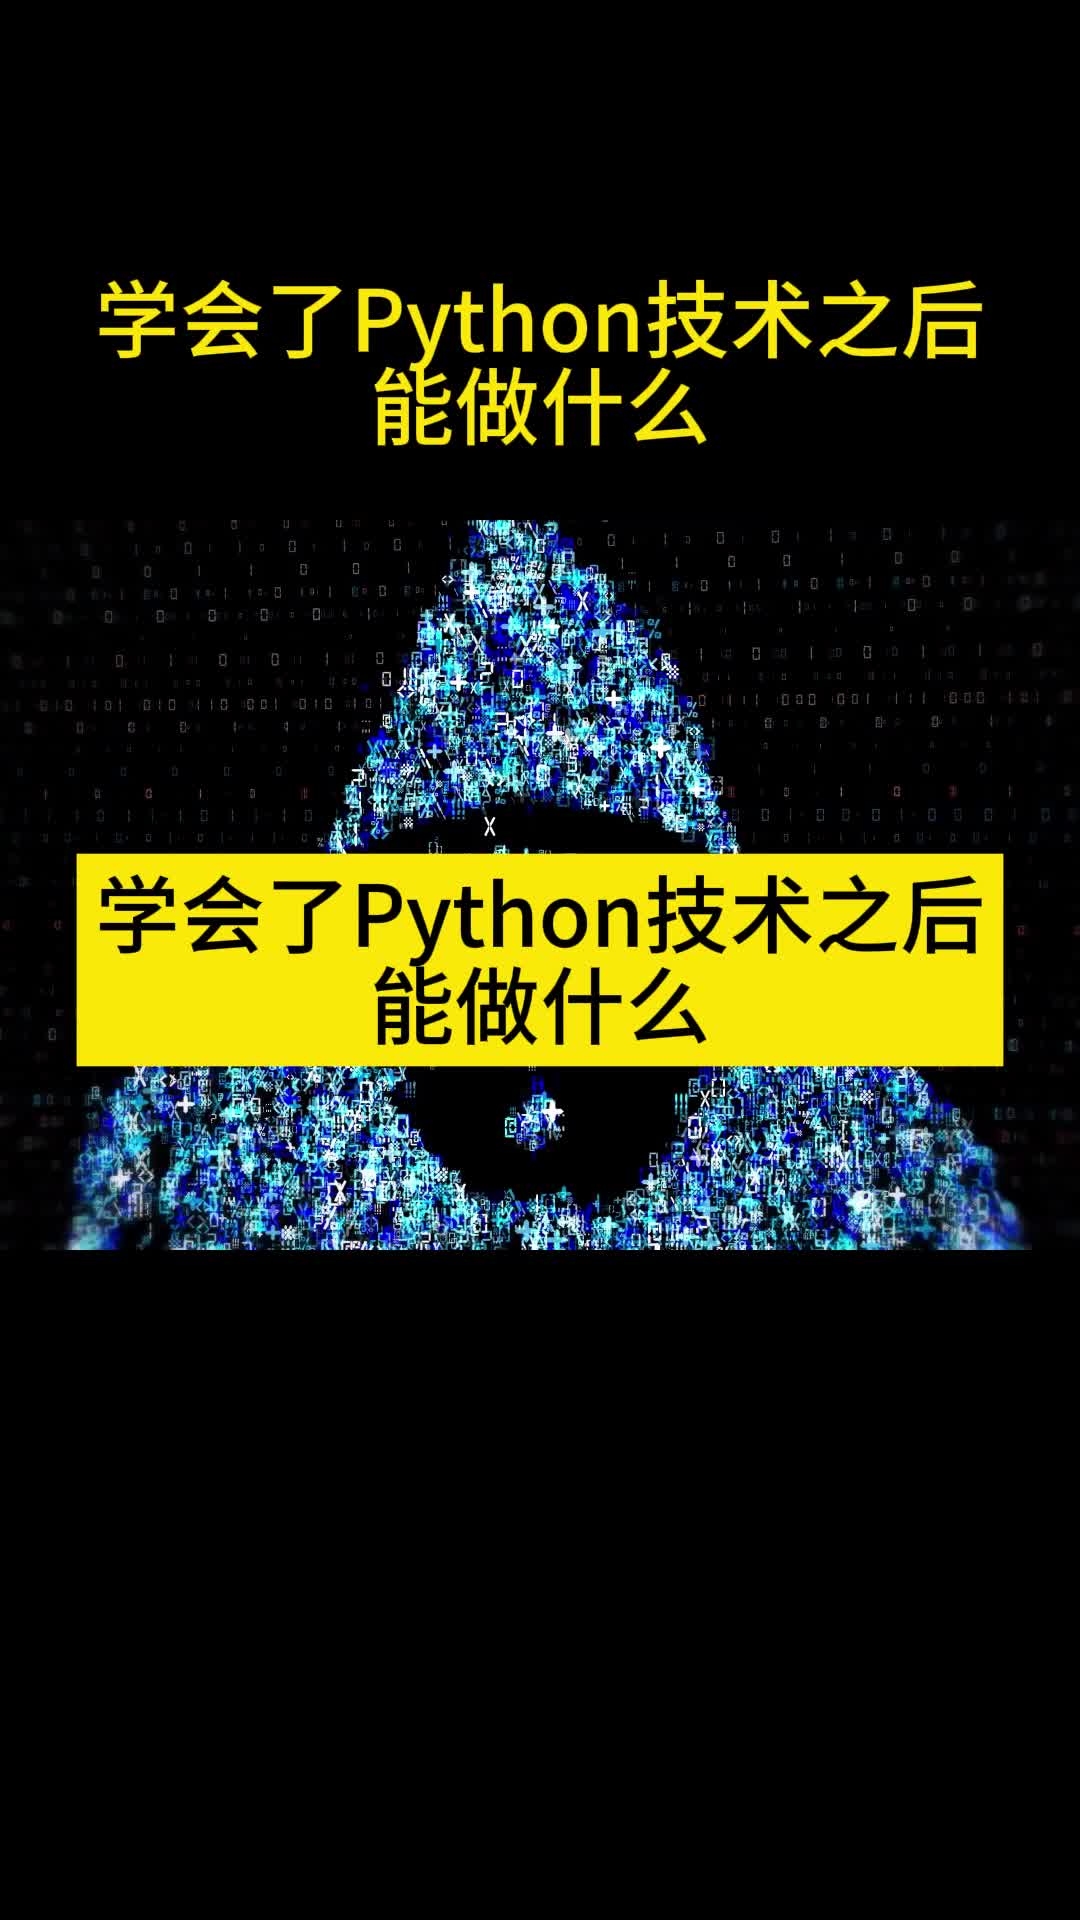 学会了Python技术之后能做什么